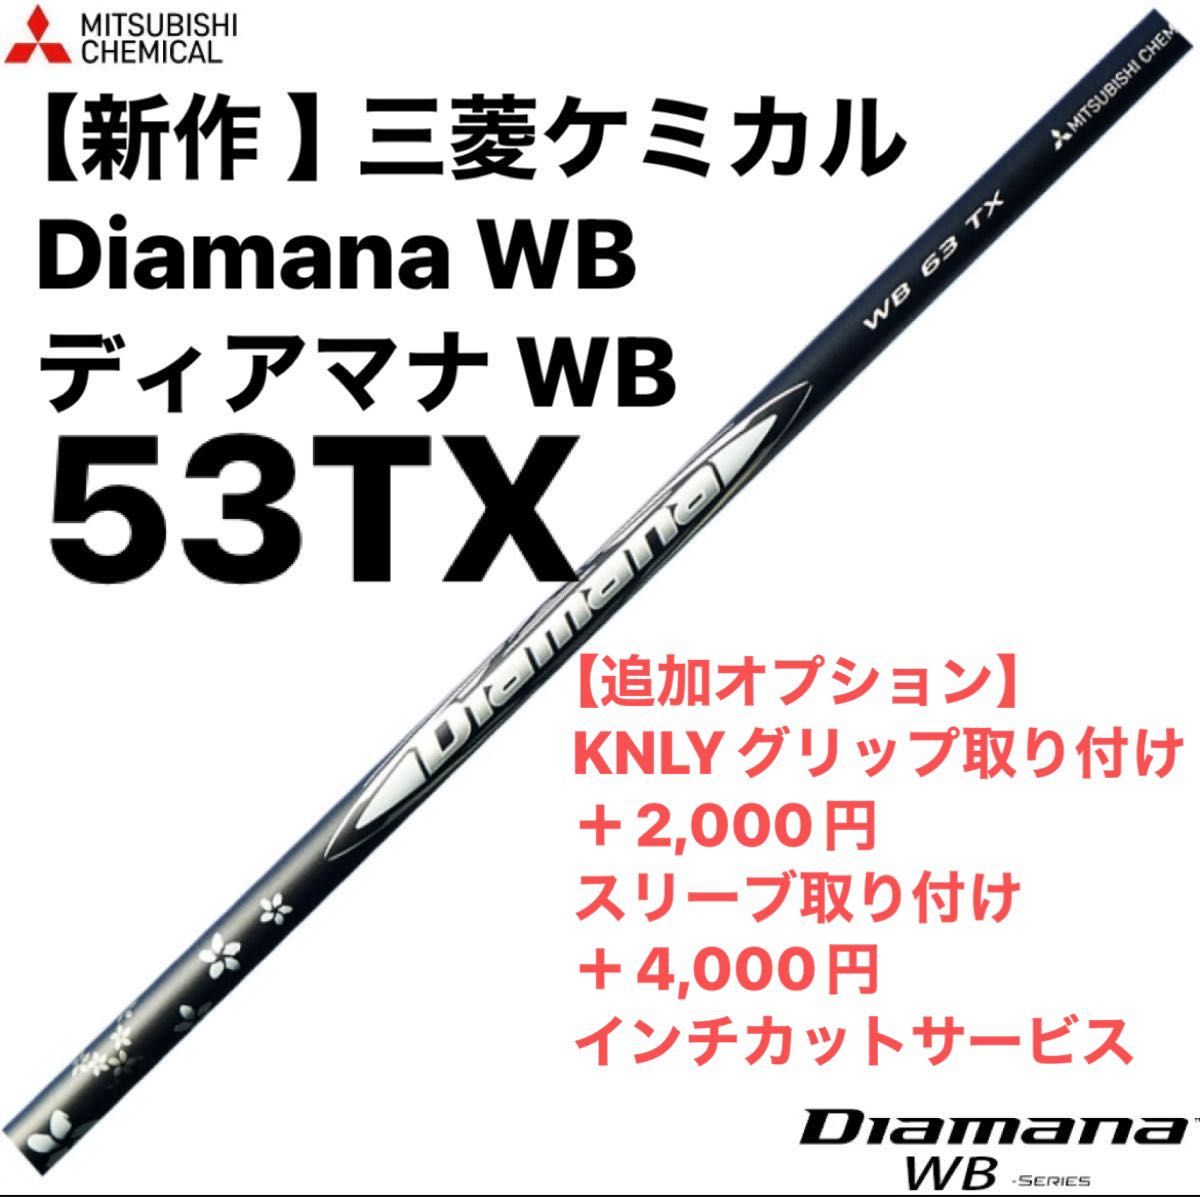 【新作 】三菱ケミカル Diamana WB ディアマナ WB  53TX シャフト単品